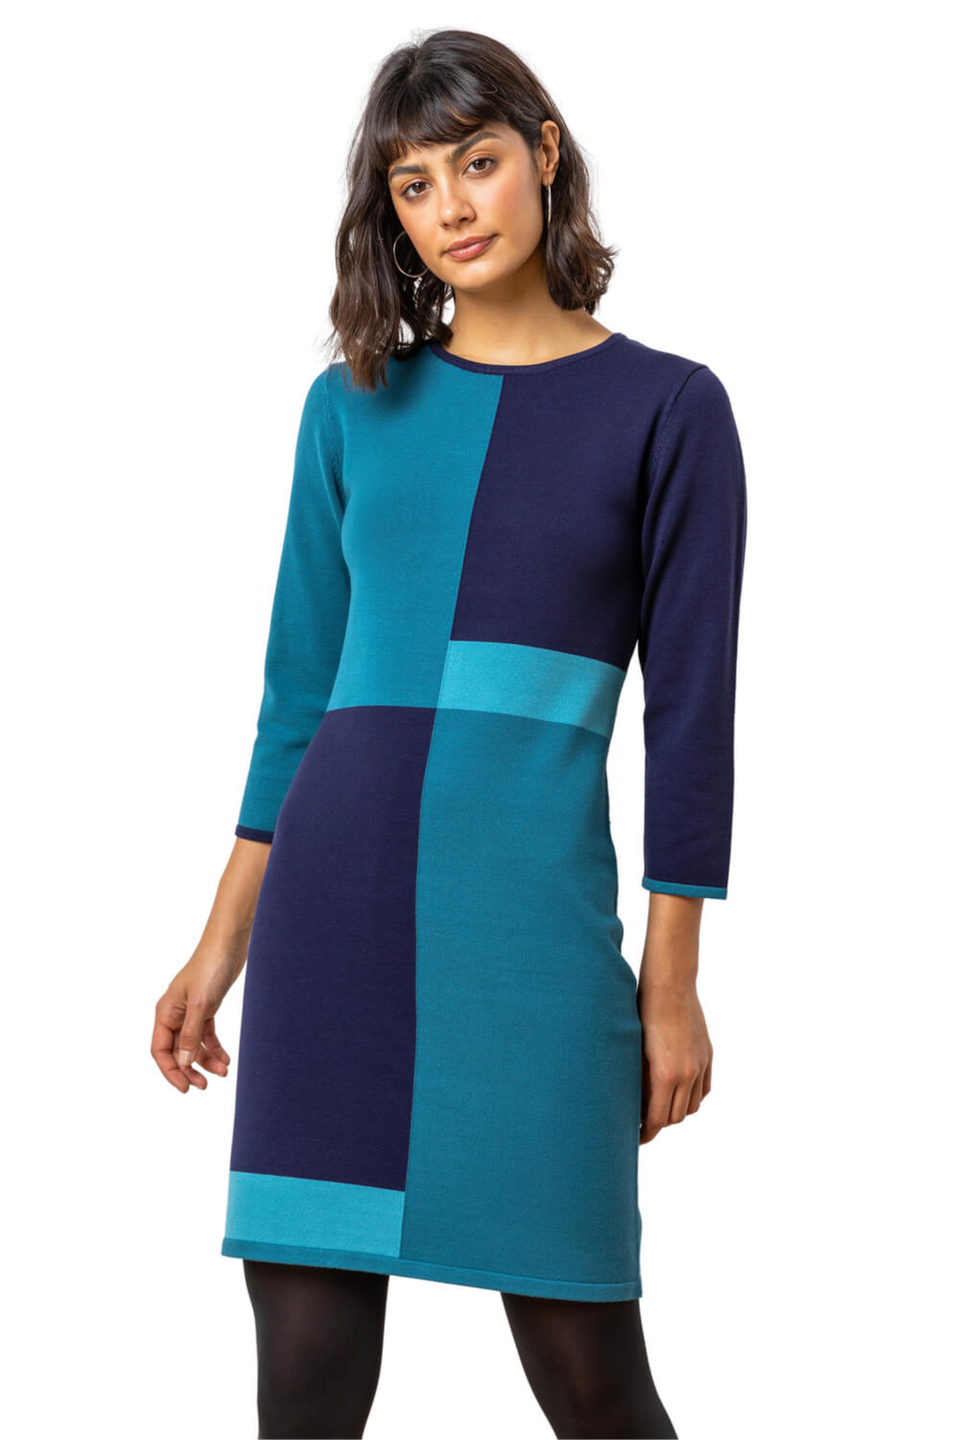 Синее трикотажное платье с цветовыми блоками Roman платье панинтер для офиса 46 размер